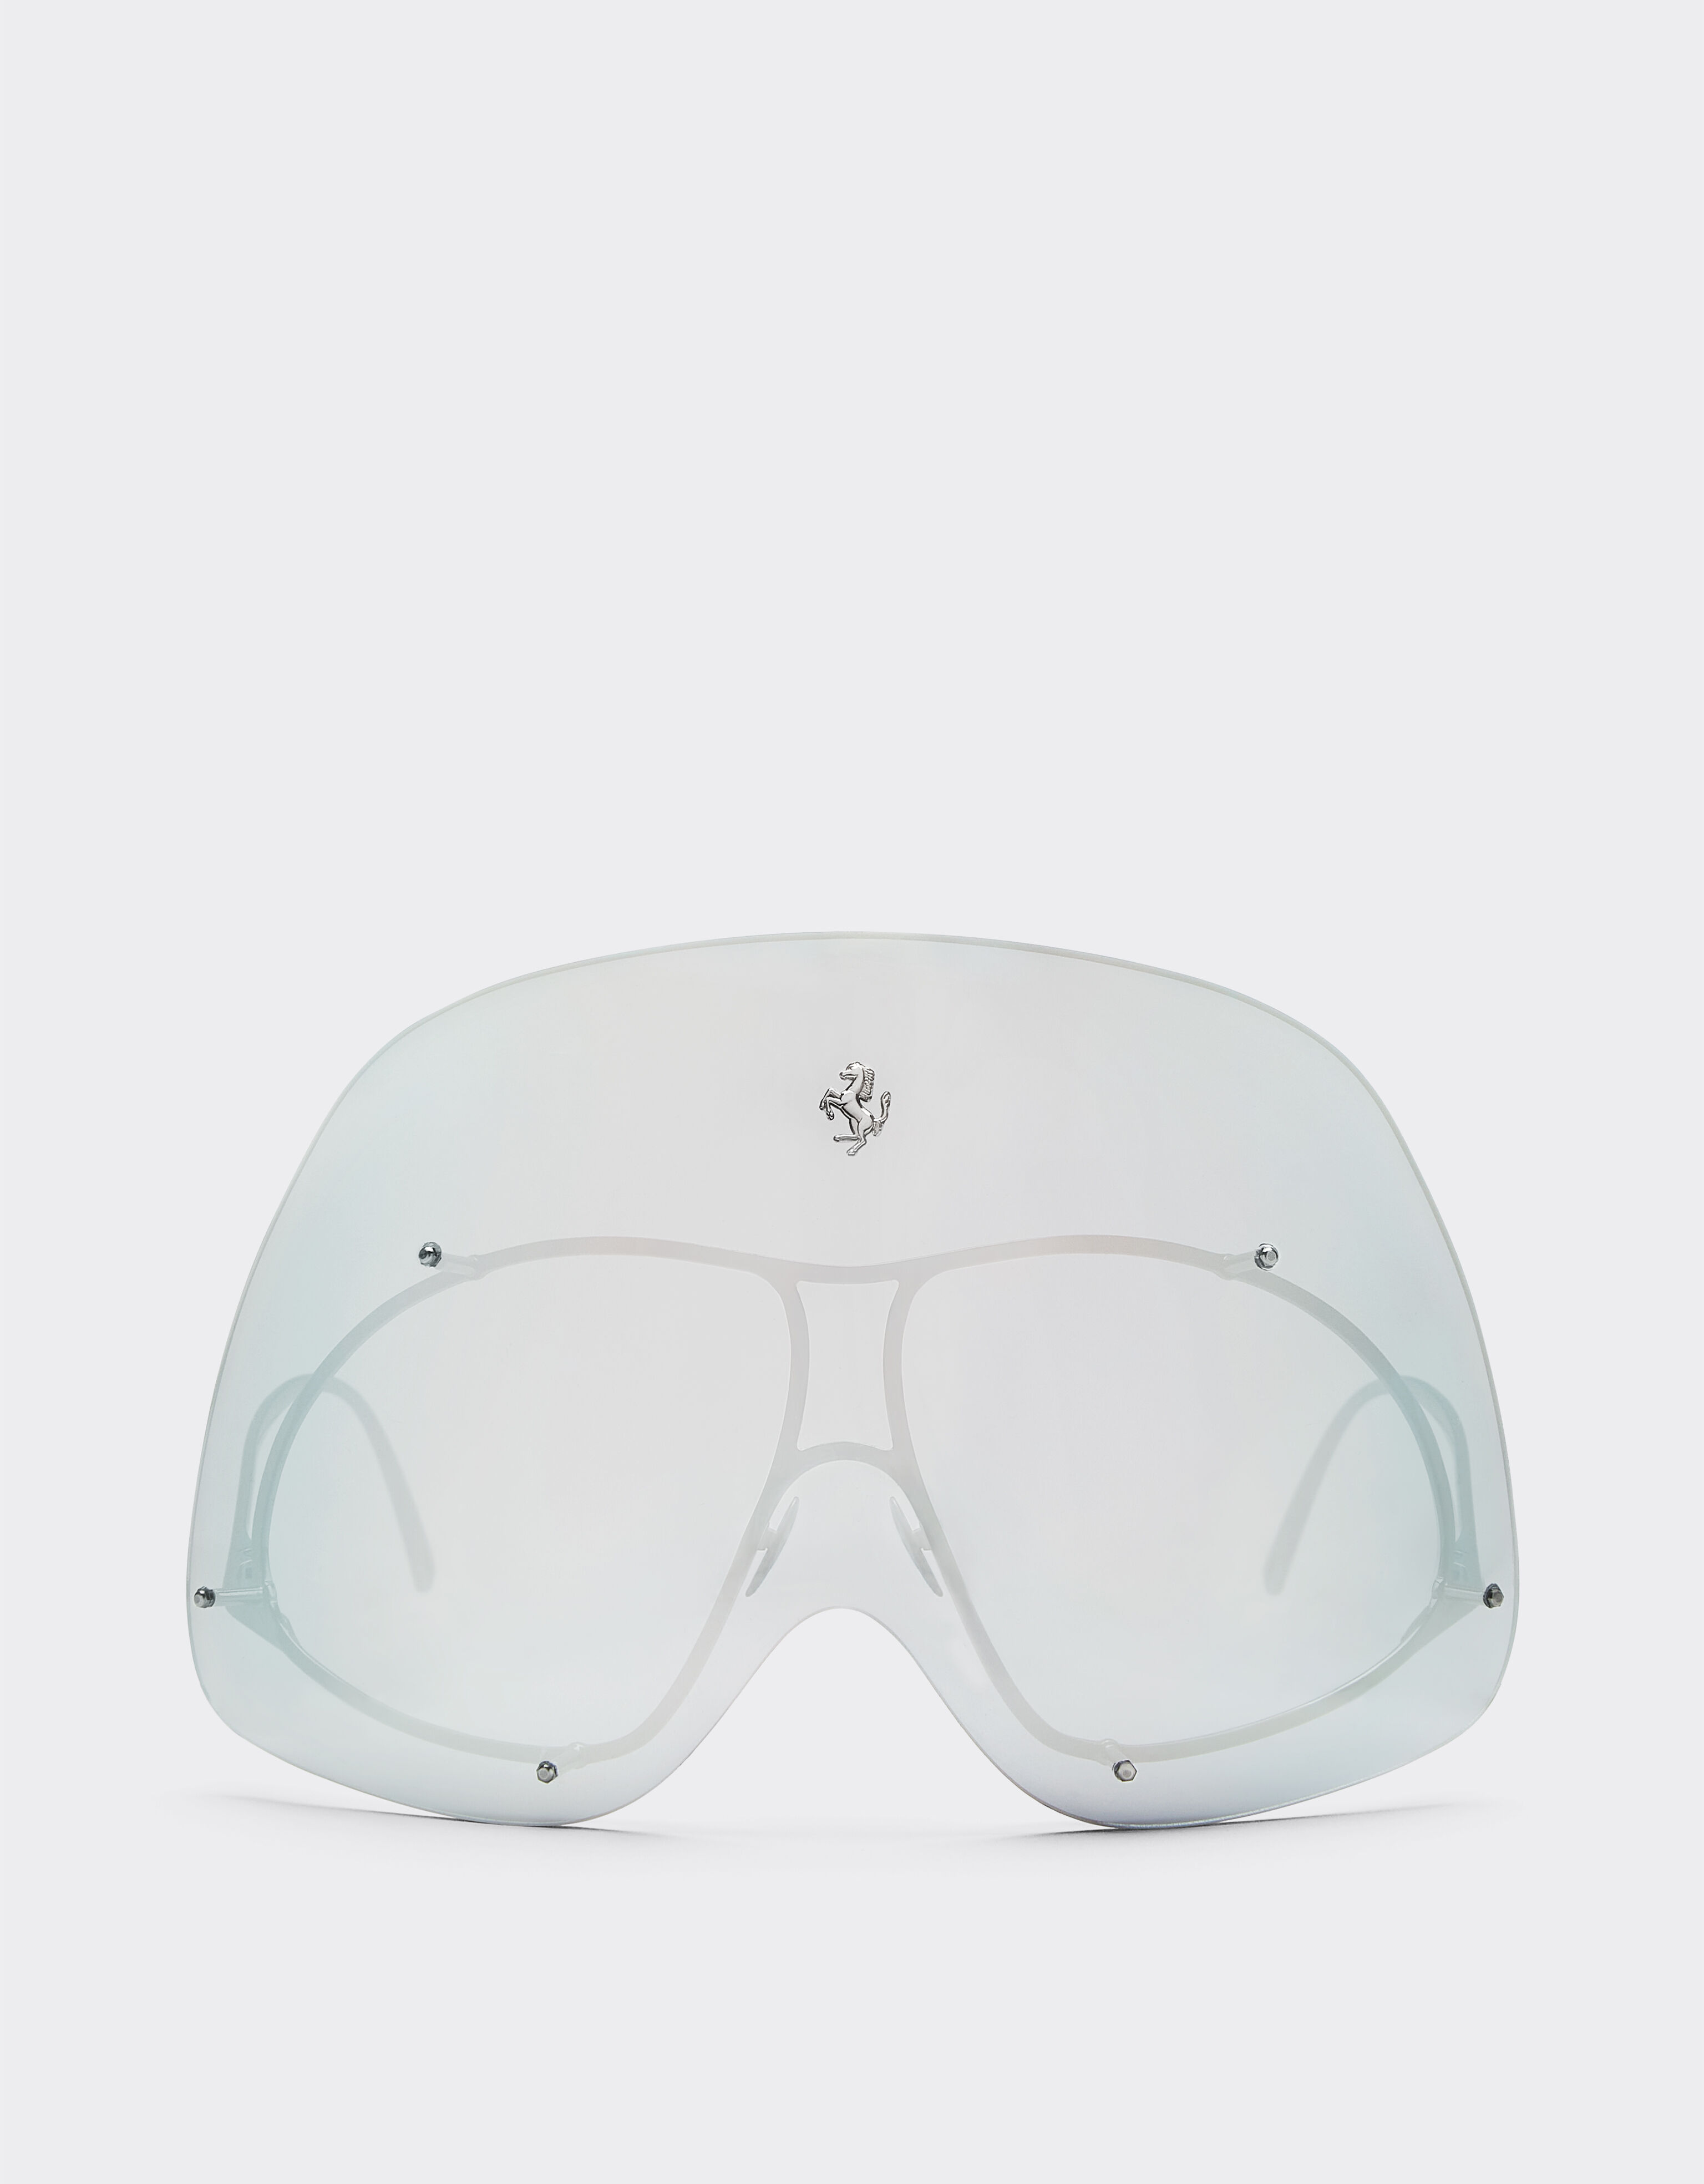 Ferrari Ferrari Limited Edition gunmetal sunglasses with mirrored shield Silver F1247f